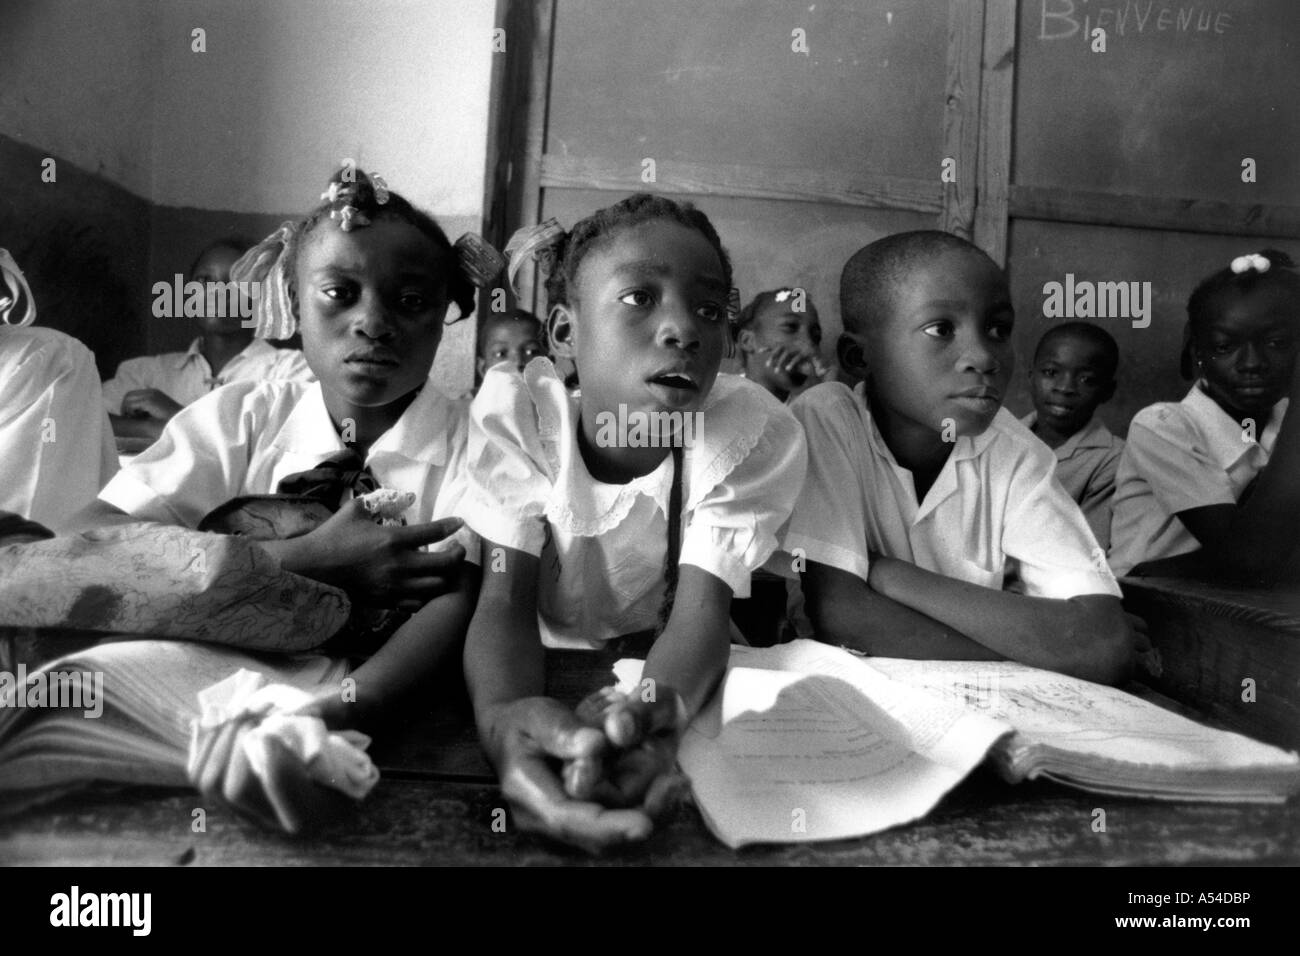 Painet hn1950 525 Mädchen Schulen Schülerinnen und Schüler Portauprince Haiti Land entwickeln Nation weniger ökonomisch entwickelt Stockfoto